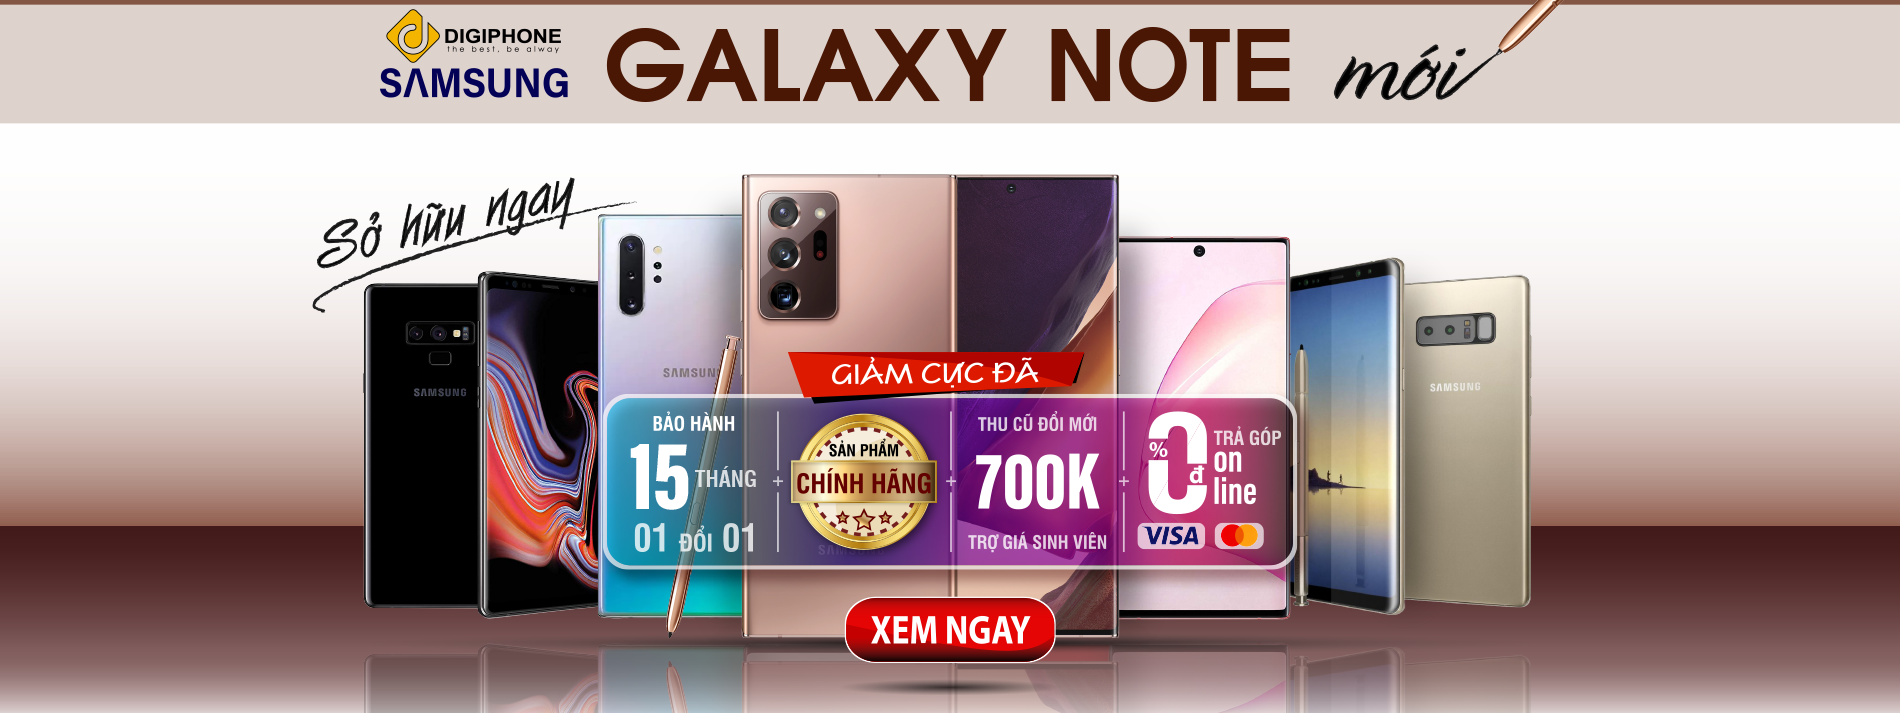 Galaxy Note 20 Ultra 5G và Note 20 5G trả góp 0 đồng